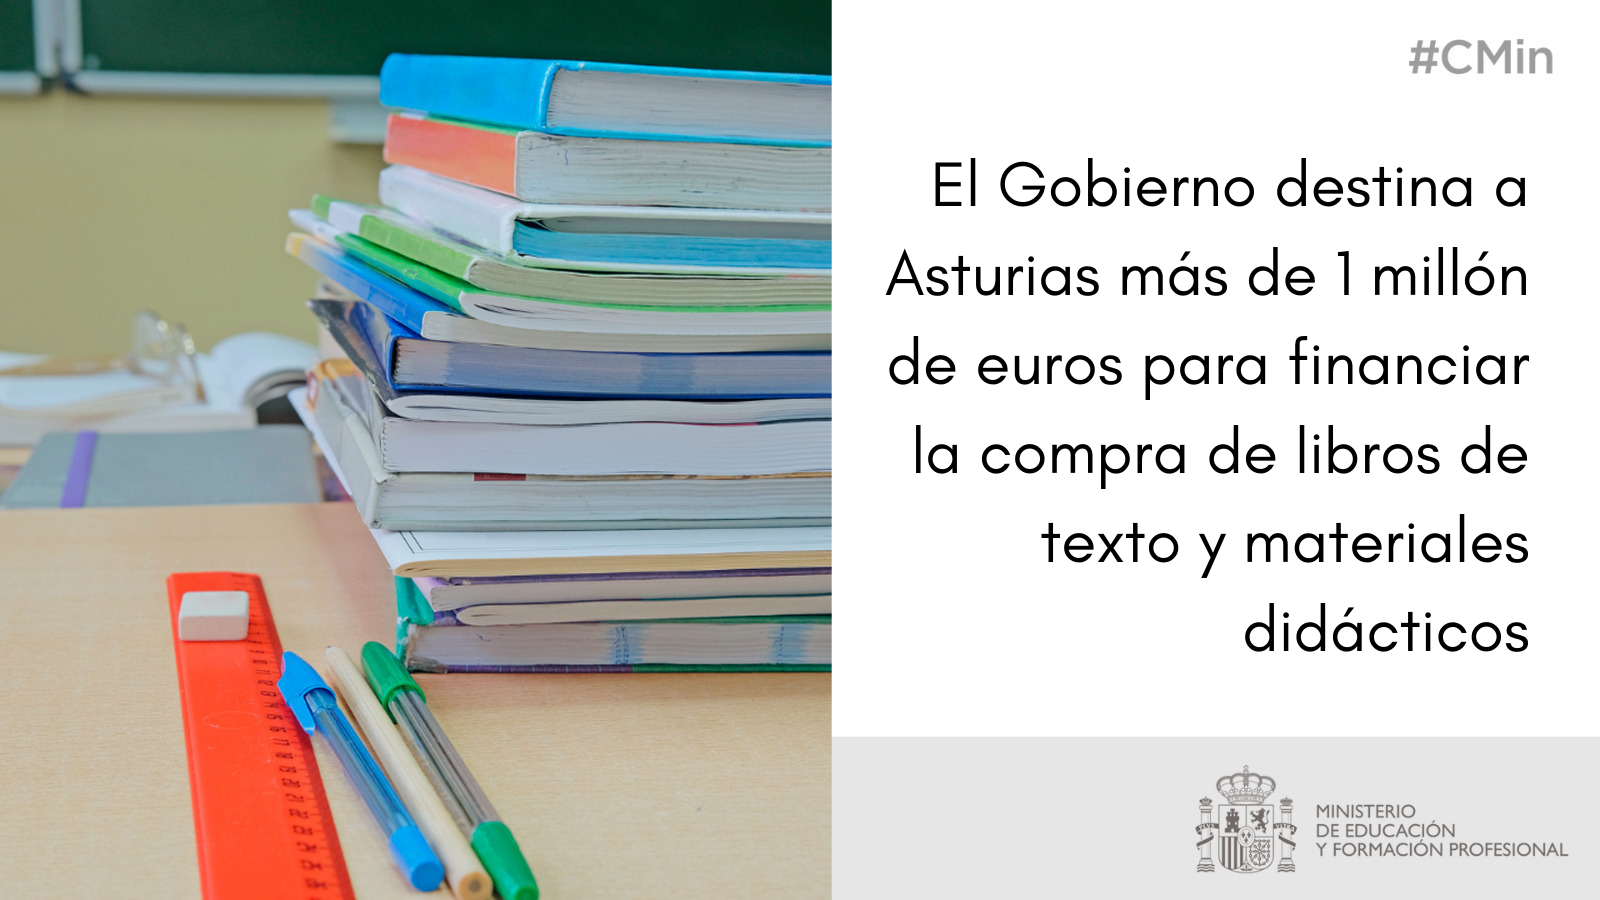 El Gobierno destina a Asturias más de 1 millón de euros para financiar la compra de libros de texto y materiales didácticos